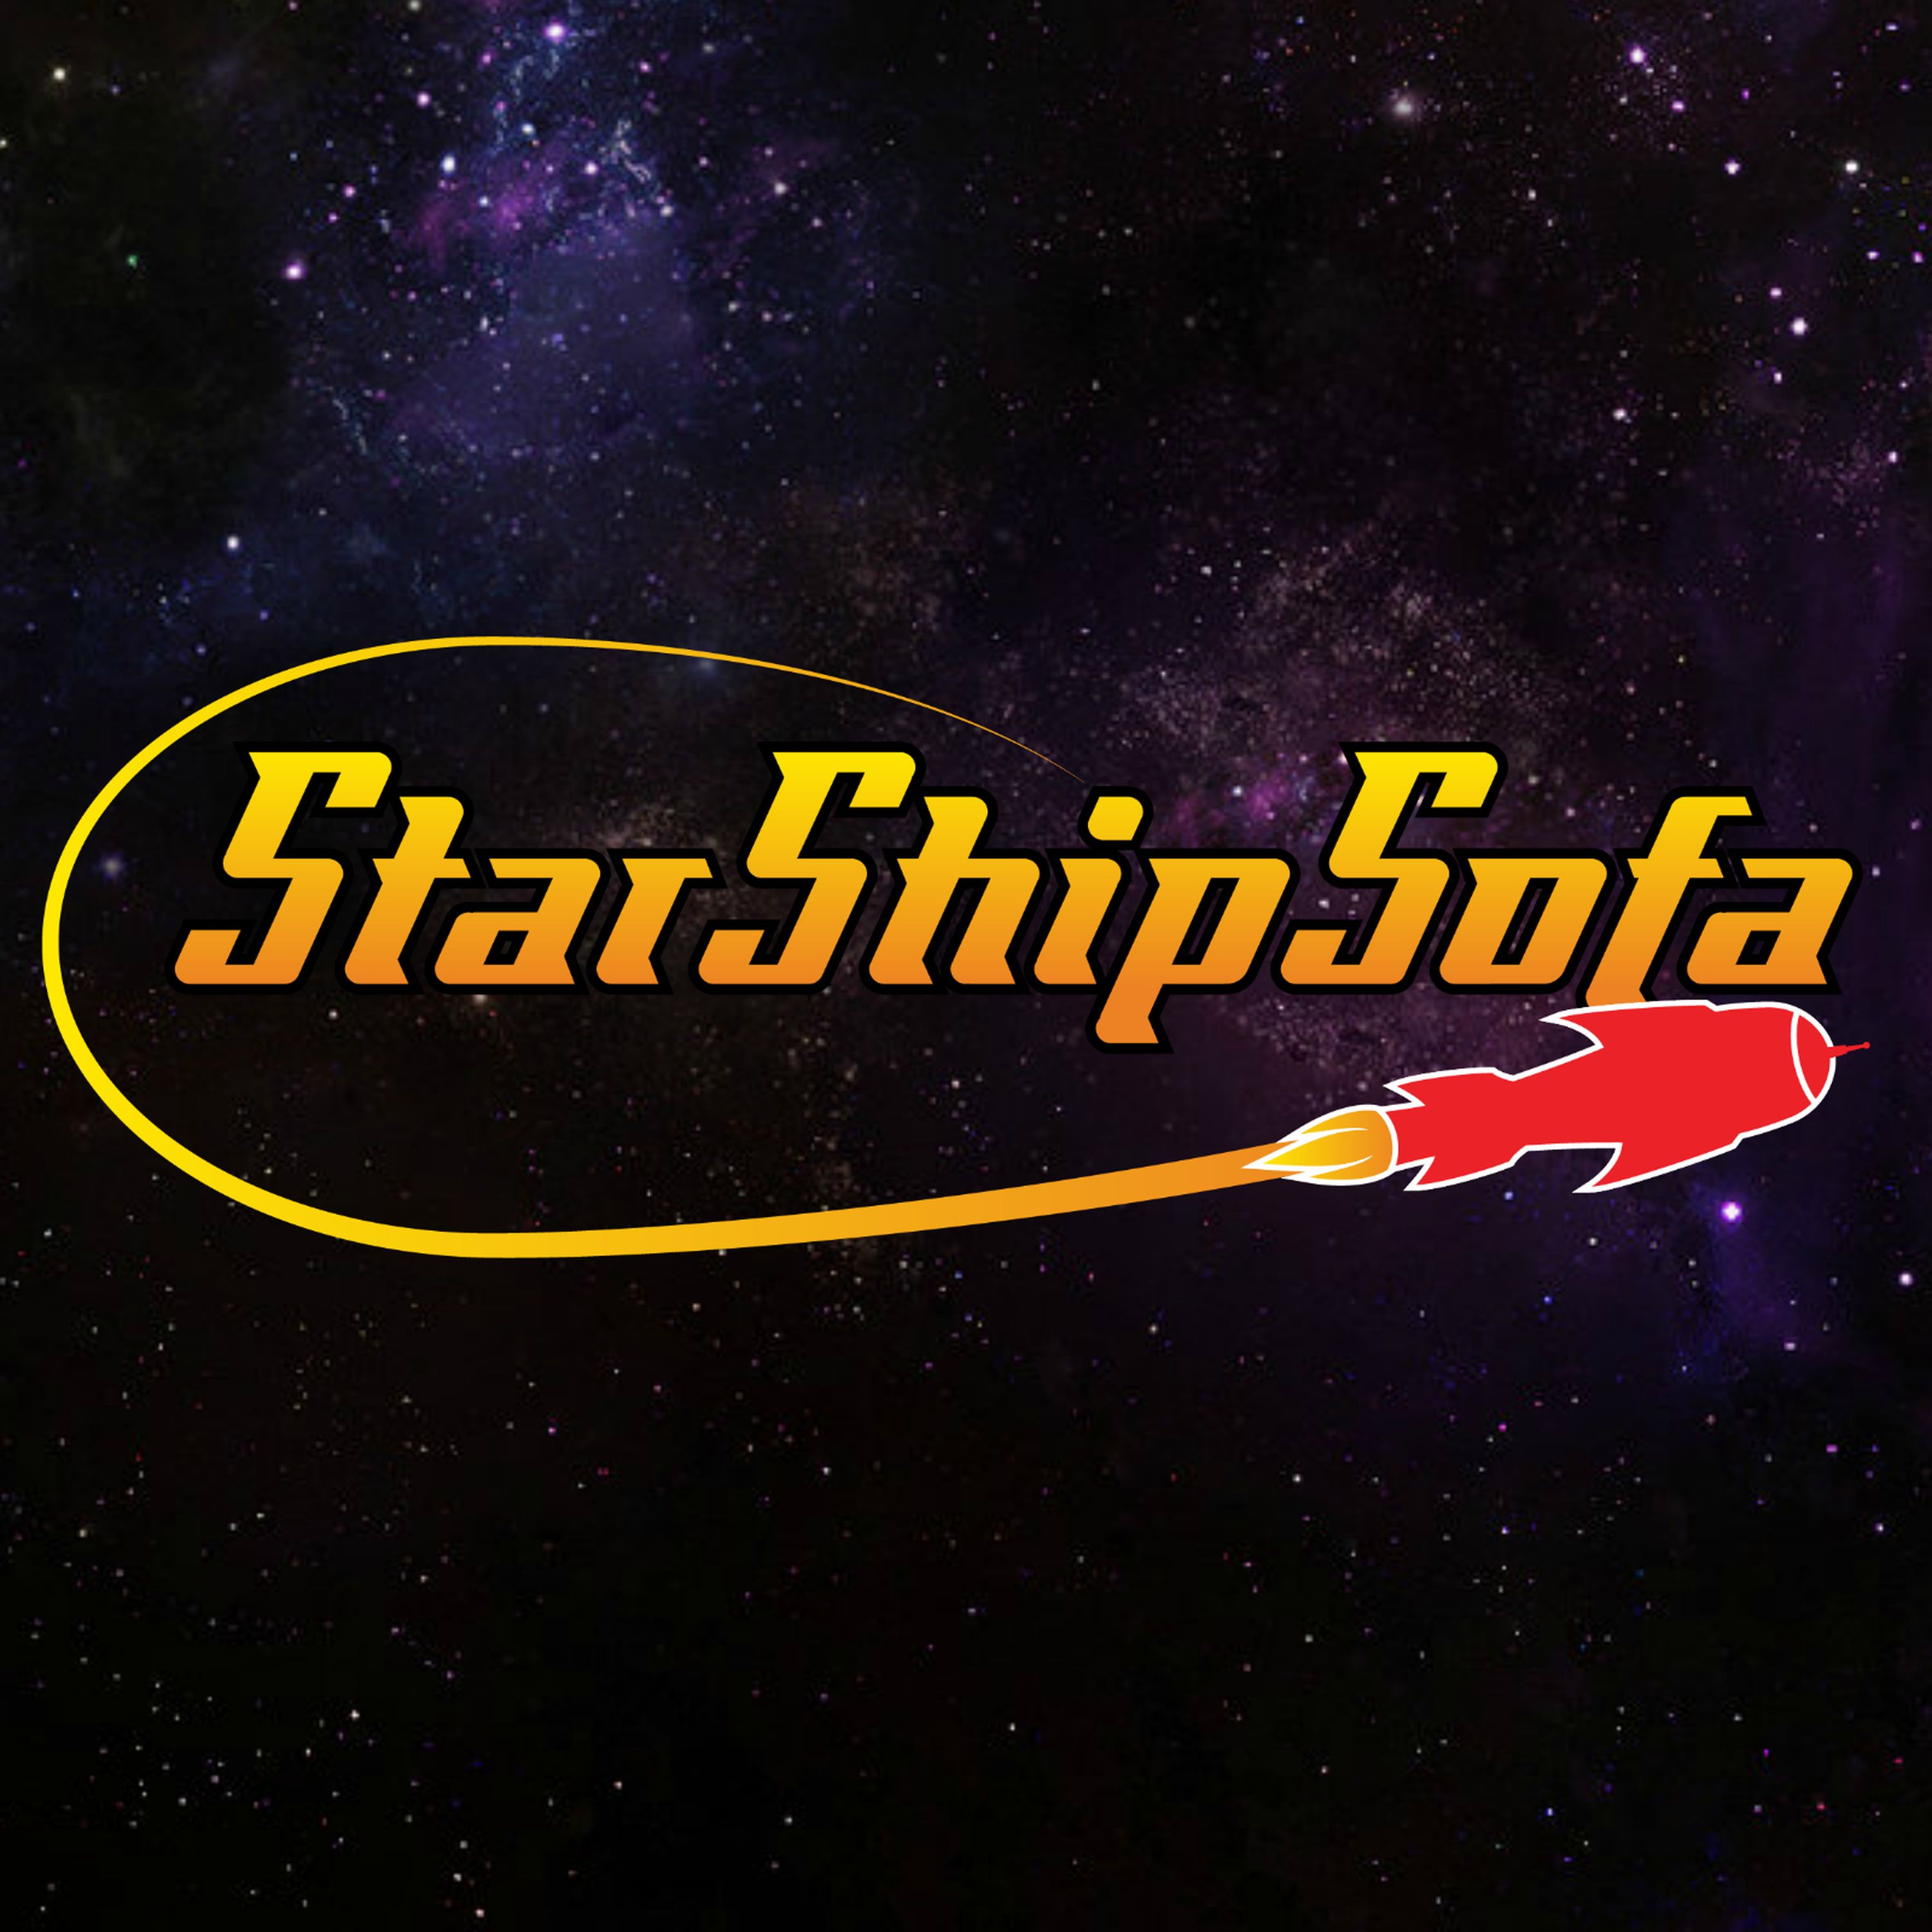 StarShipSofa No 553 John A Karr